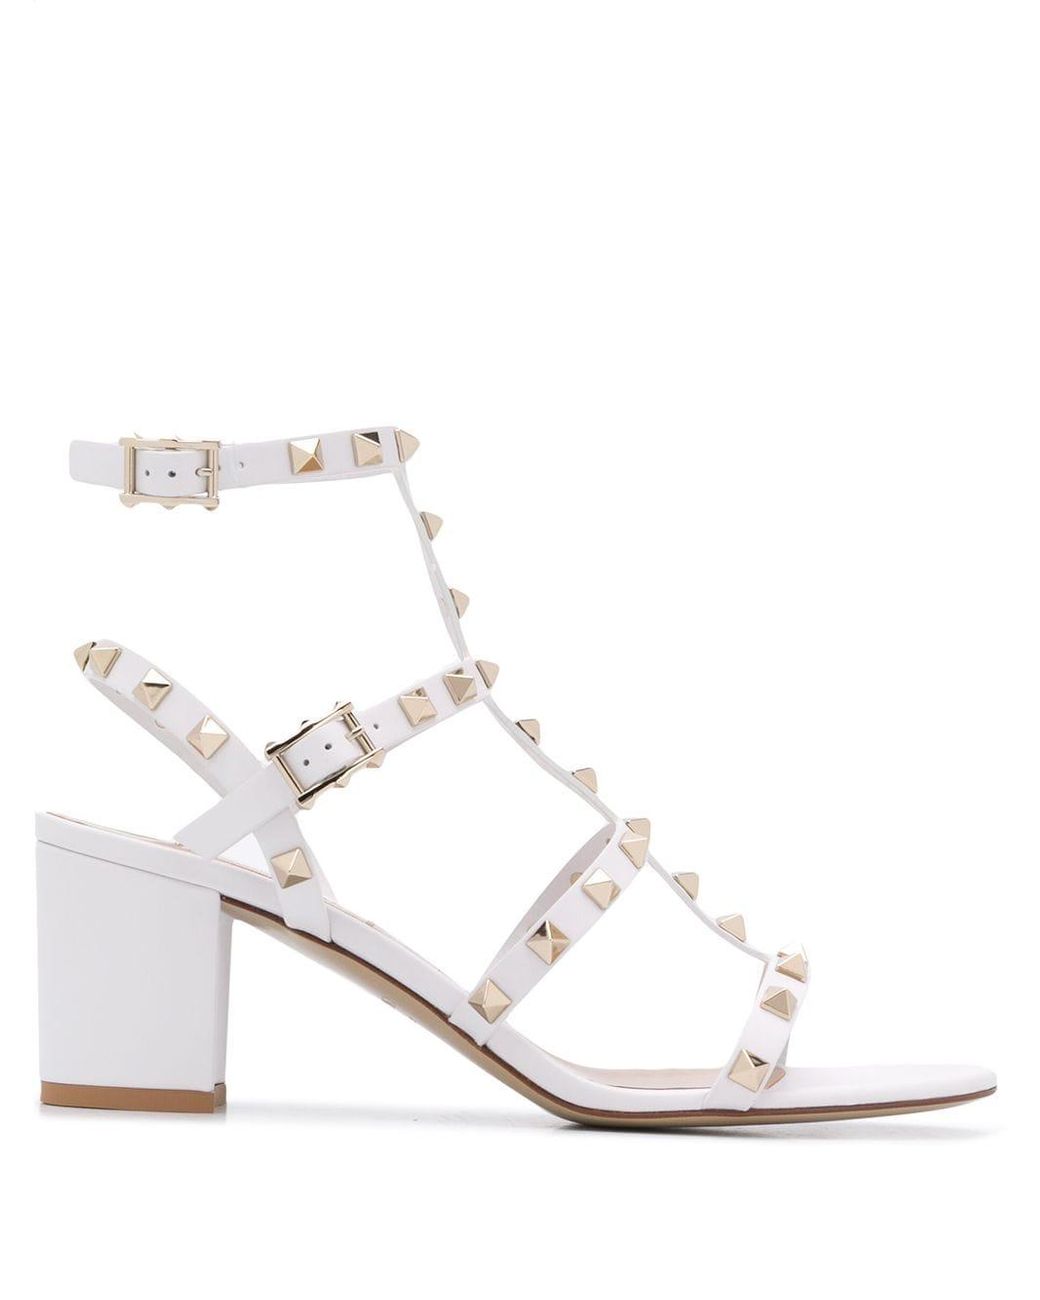 Valentino Garavani Leather Rockstud Caged Mid-heel Sandals in White - Lyst